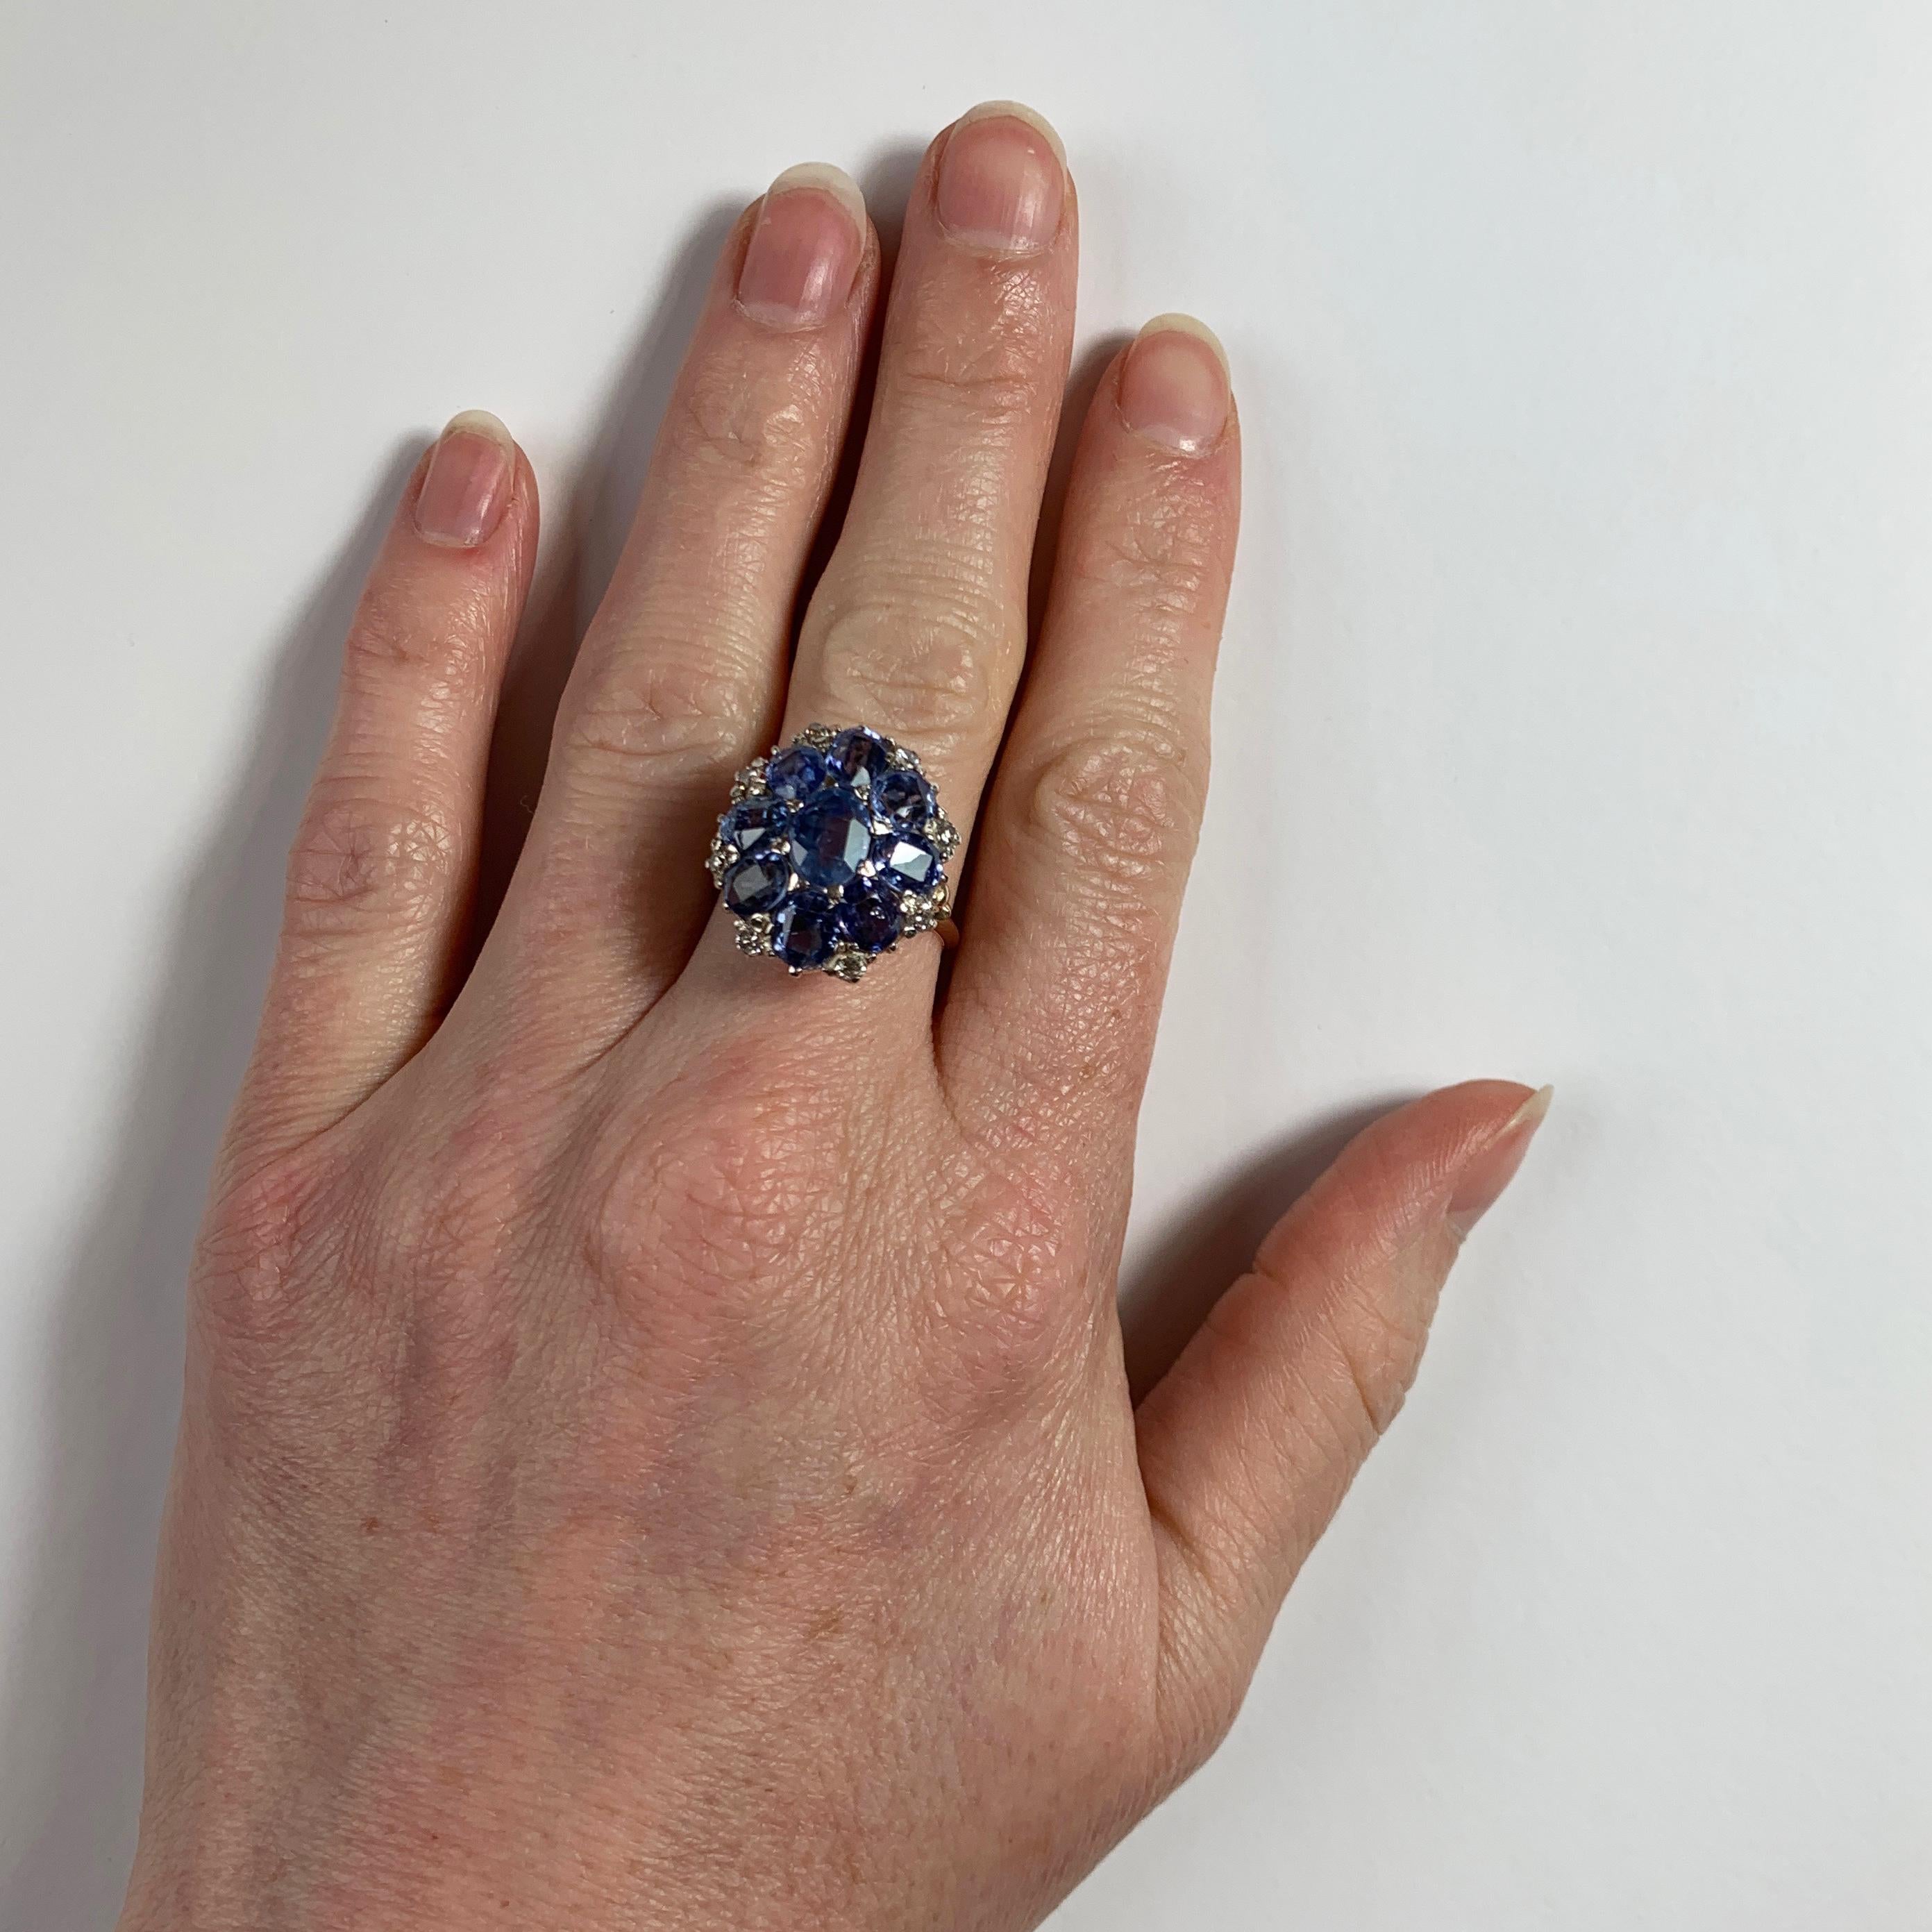 Ein Ring aus 18 Karat (18K) Weiß- und Roségold, besetzt mit neun ovalen blauen Saphiren und acht runden weißen Diamanten im Brillantschliff. Das Gewicht des mittleren Saphirs wird auf etwa 1,70 Karat geschätzt. Die Saphire weisen keine Anzeichen